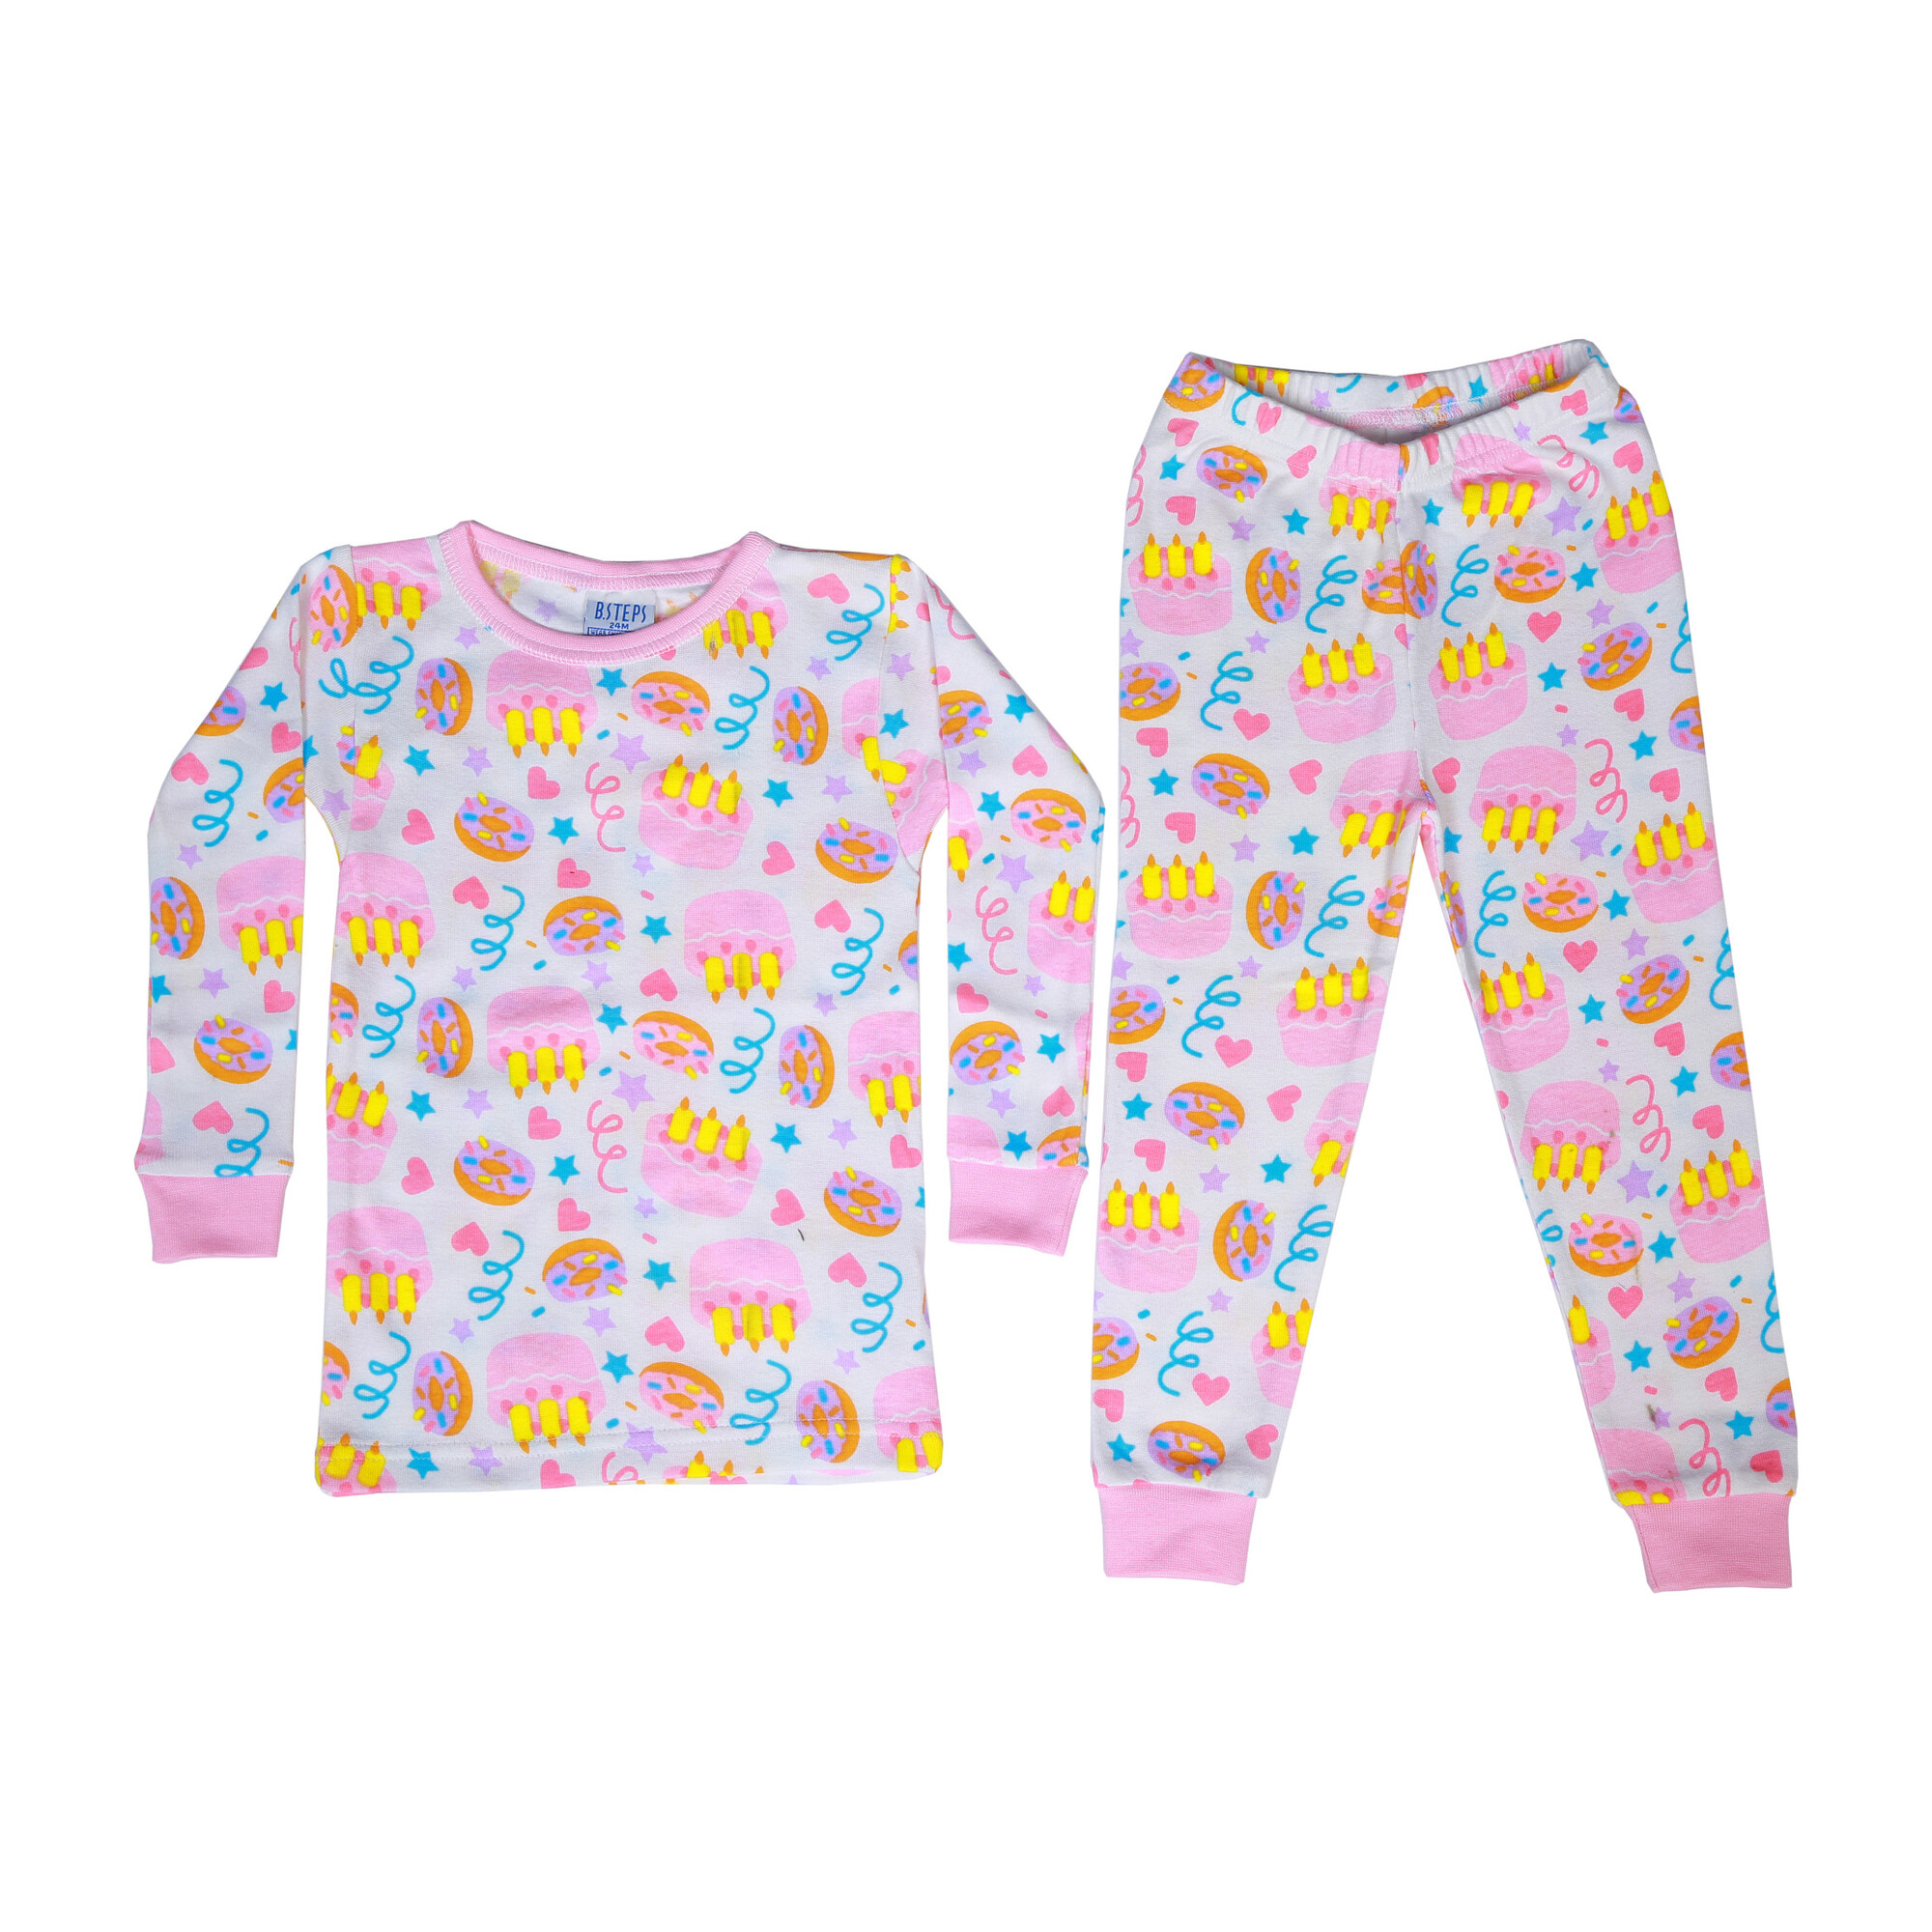 Birthday Pajamas, White - Baby Steps Sleepwear